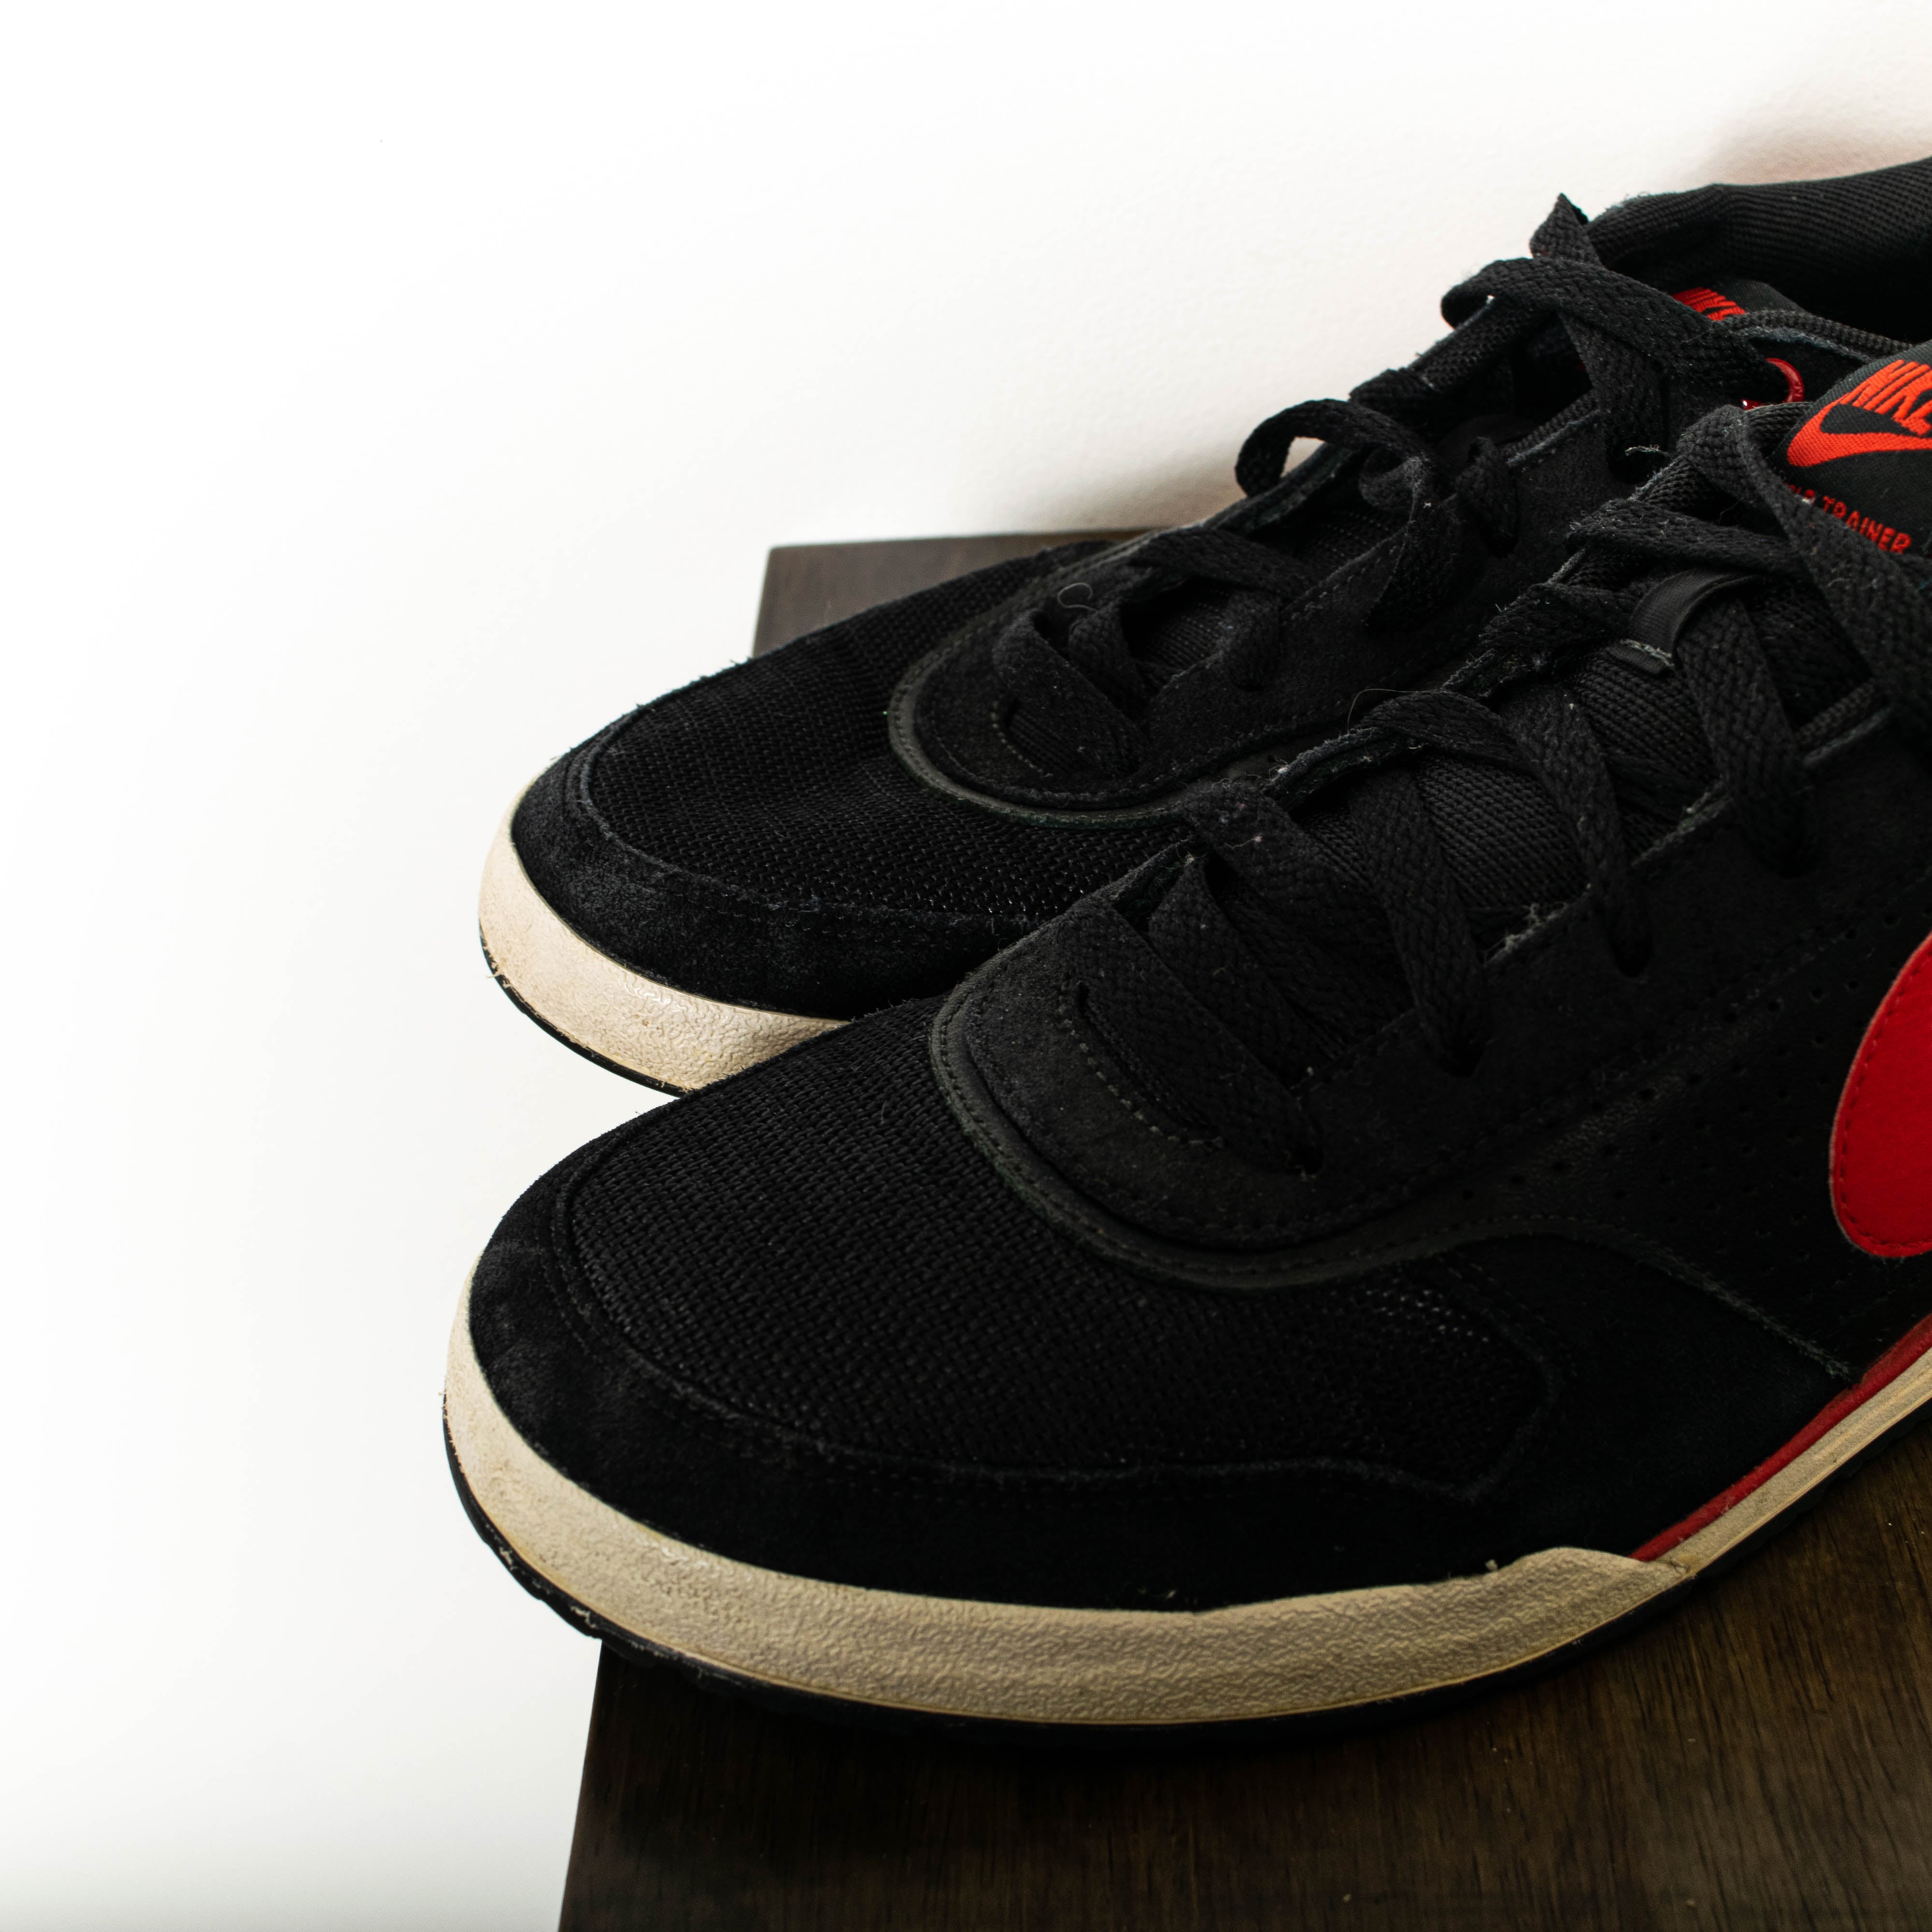 Nike Field Trainer Black Red Low Top Sneakers Mens EU43